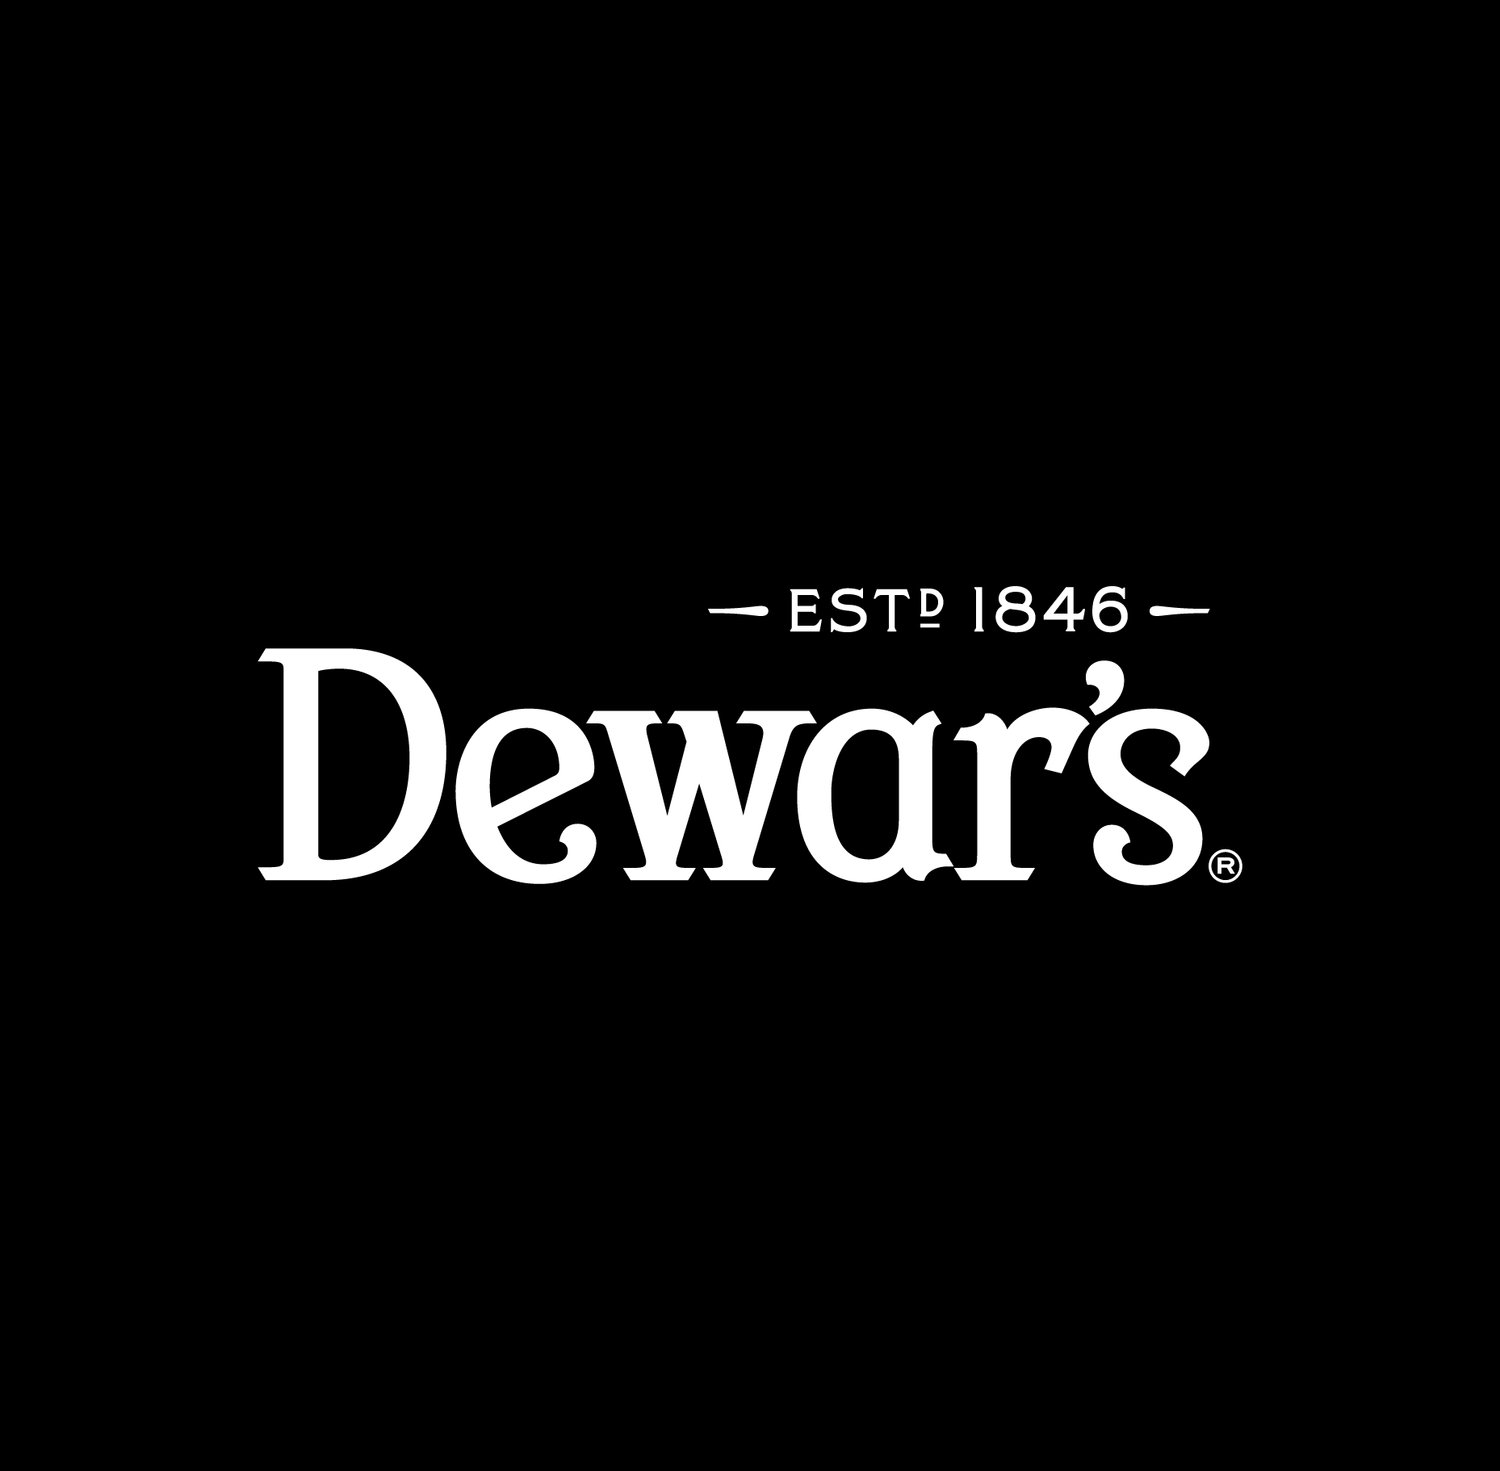 Dewars Logos